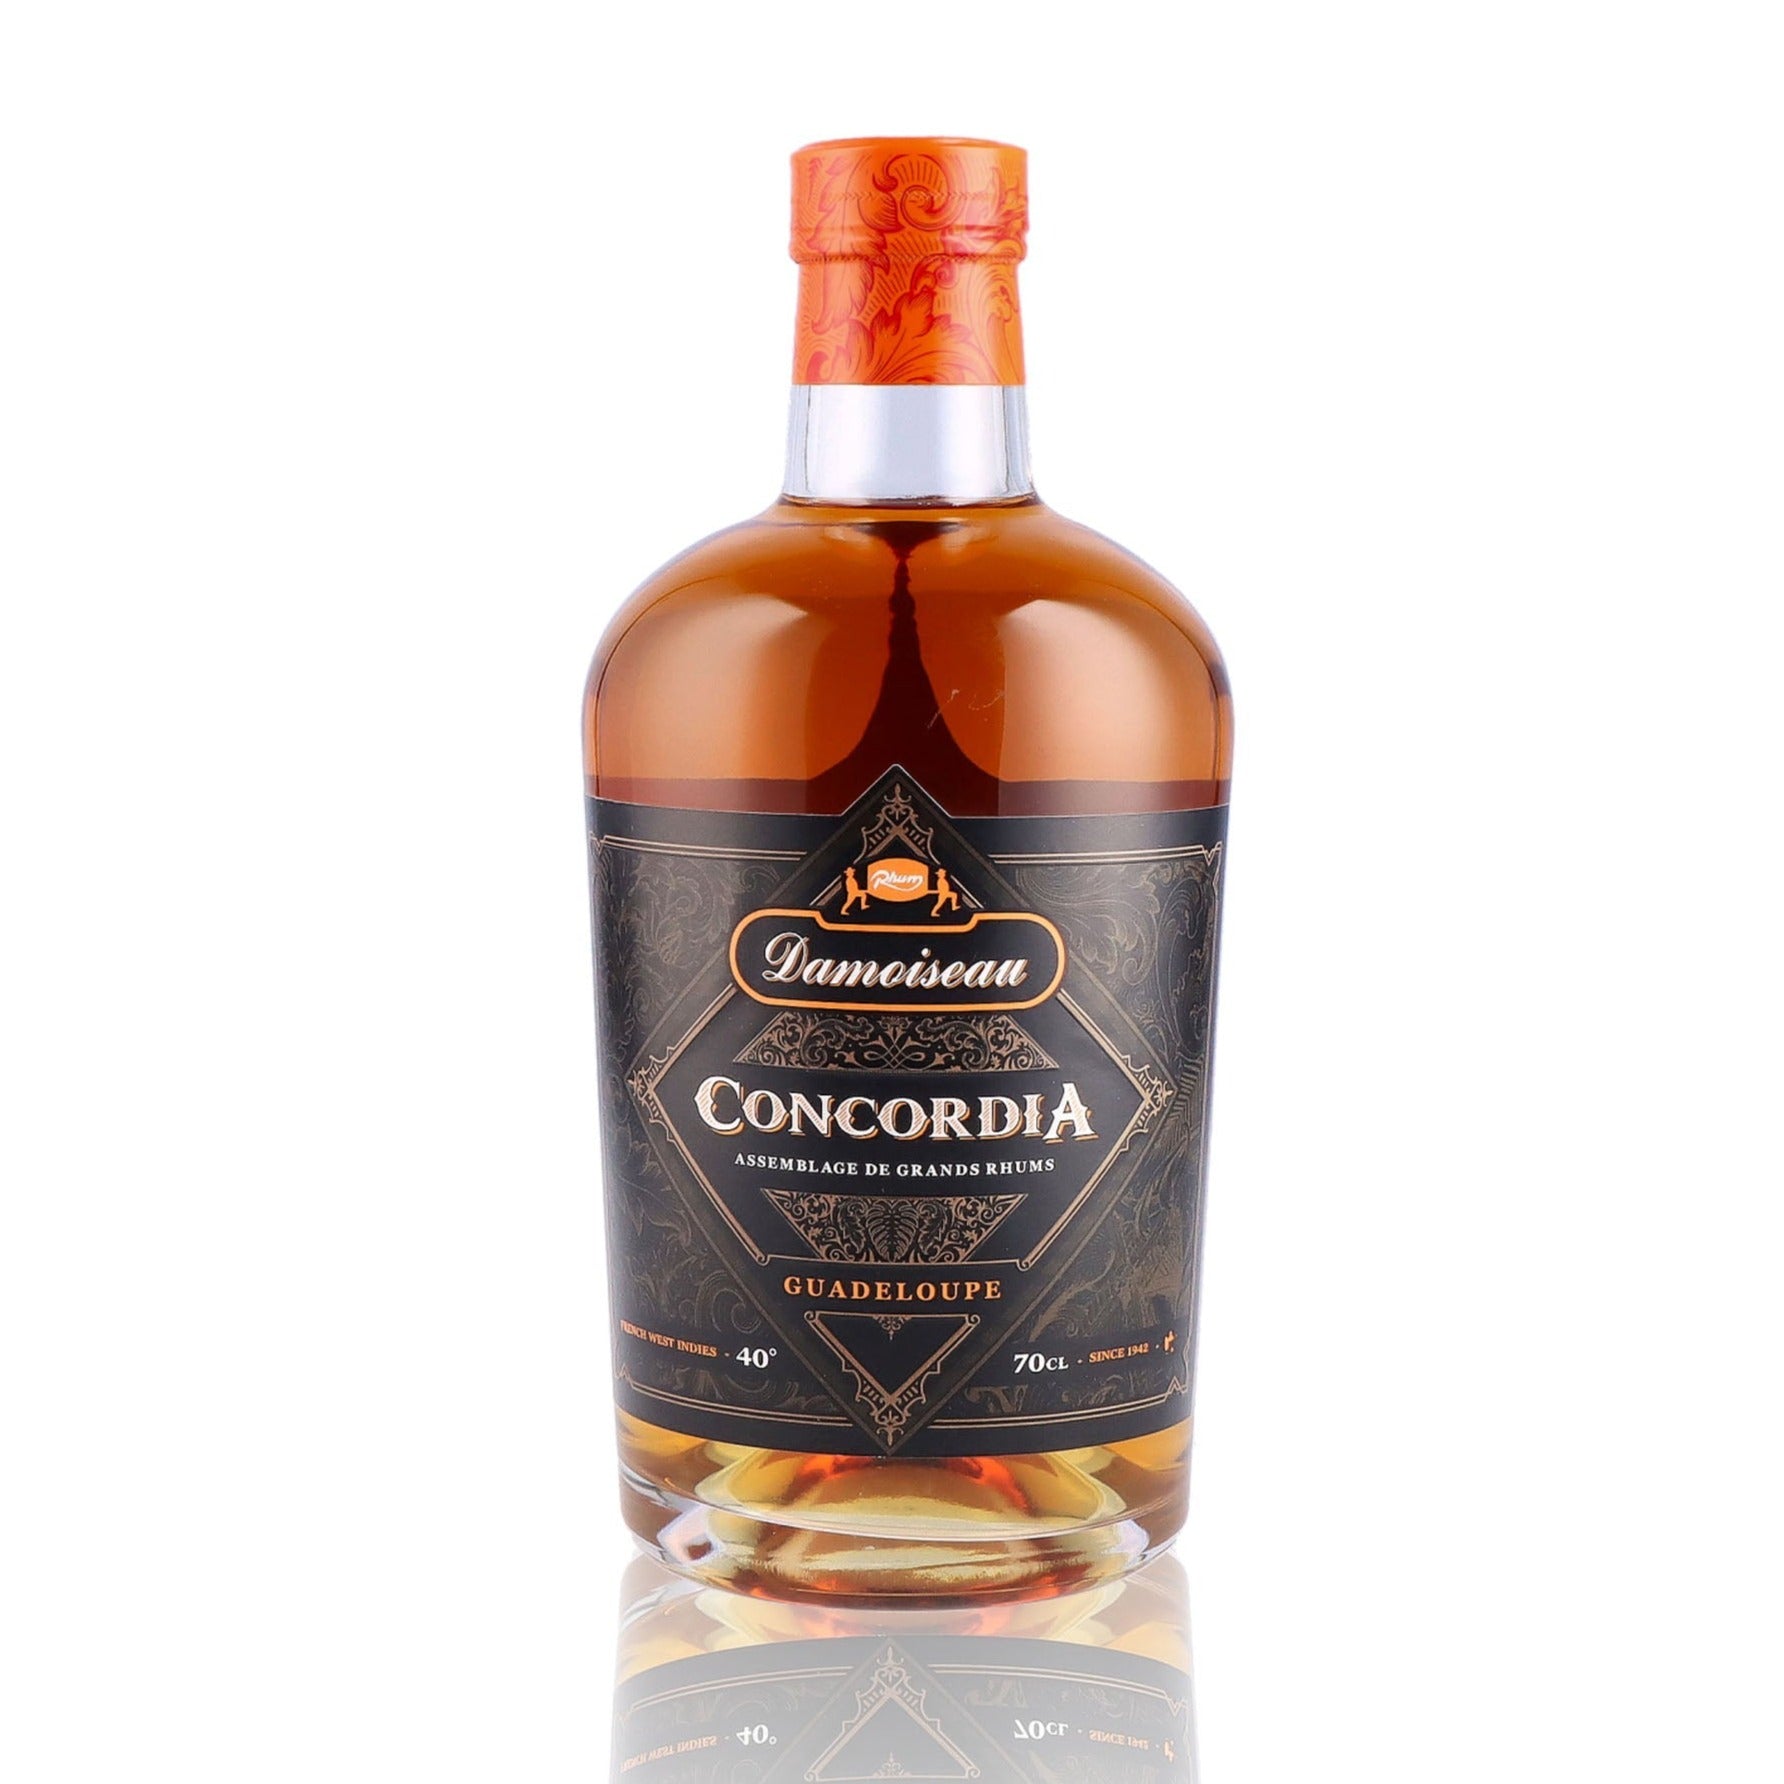 Une bouteille de rhum vieux, de la marque Damoiseau, nommée Concordia.